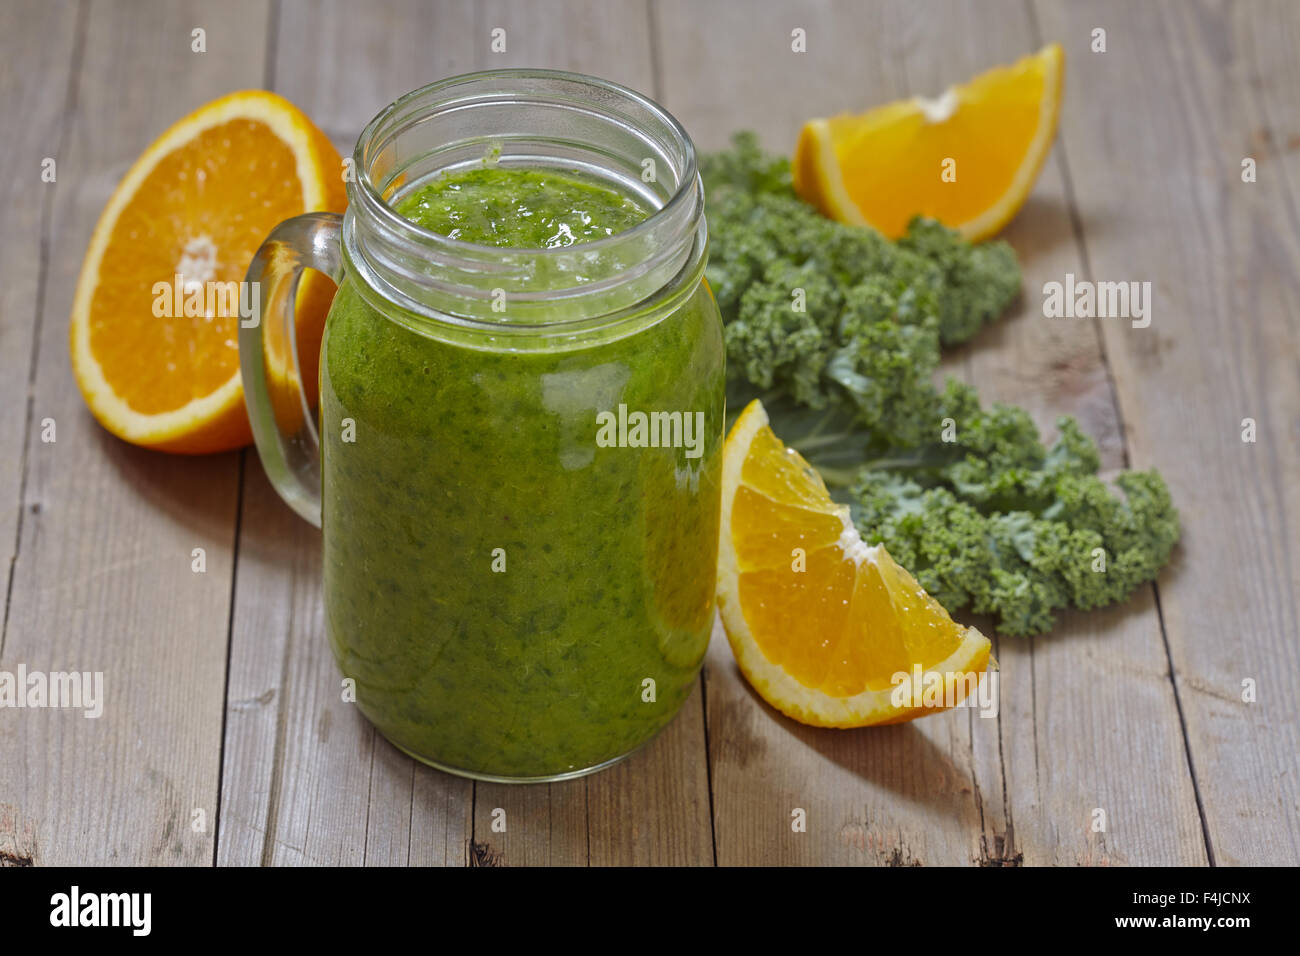 Kale green smoothie Stock Photo